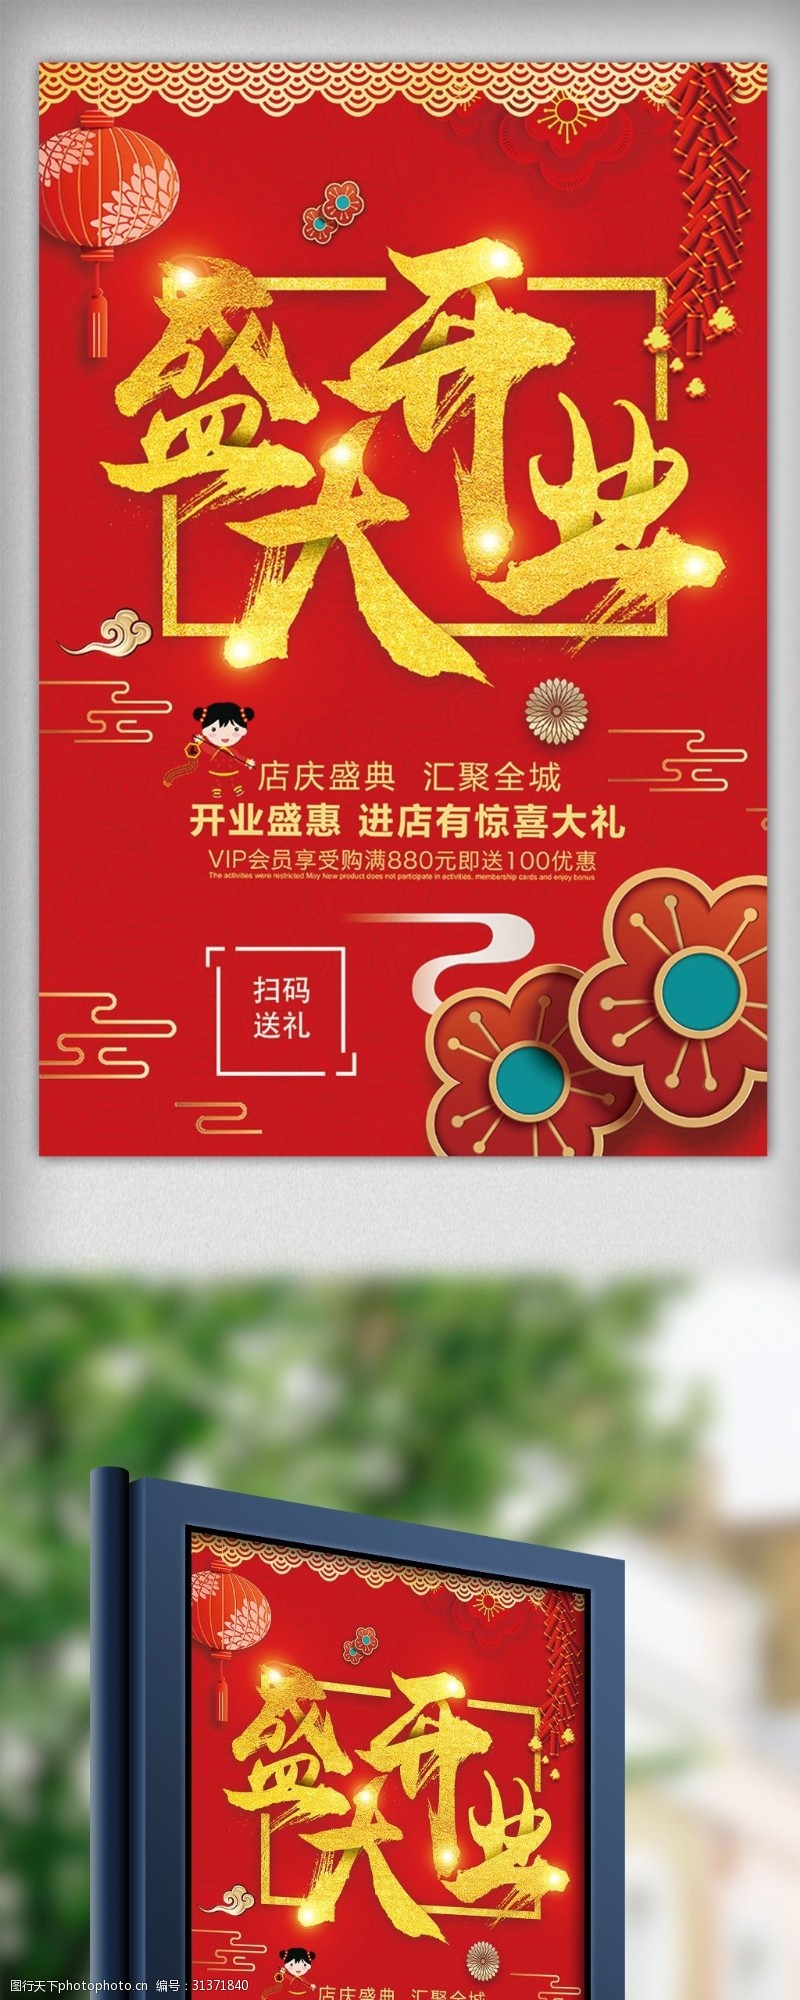 新年素材图片下载狗年开业大吉盛大开业新年促销海报